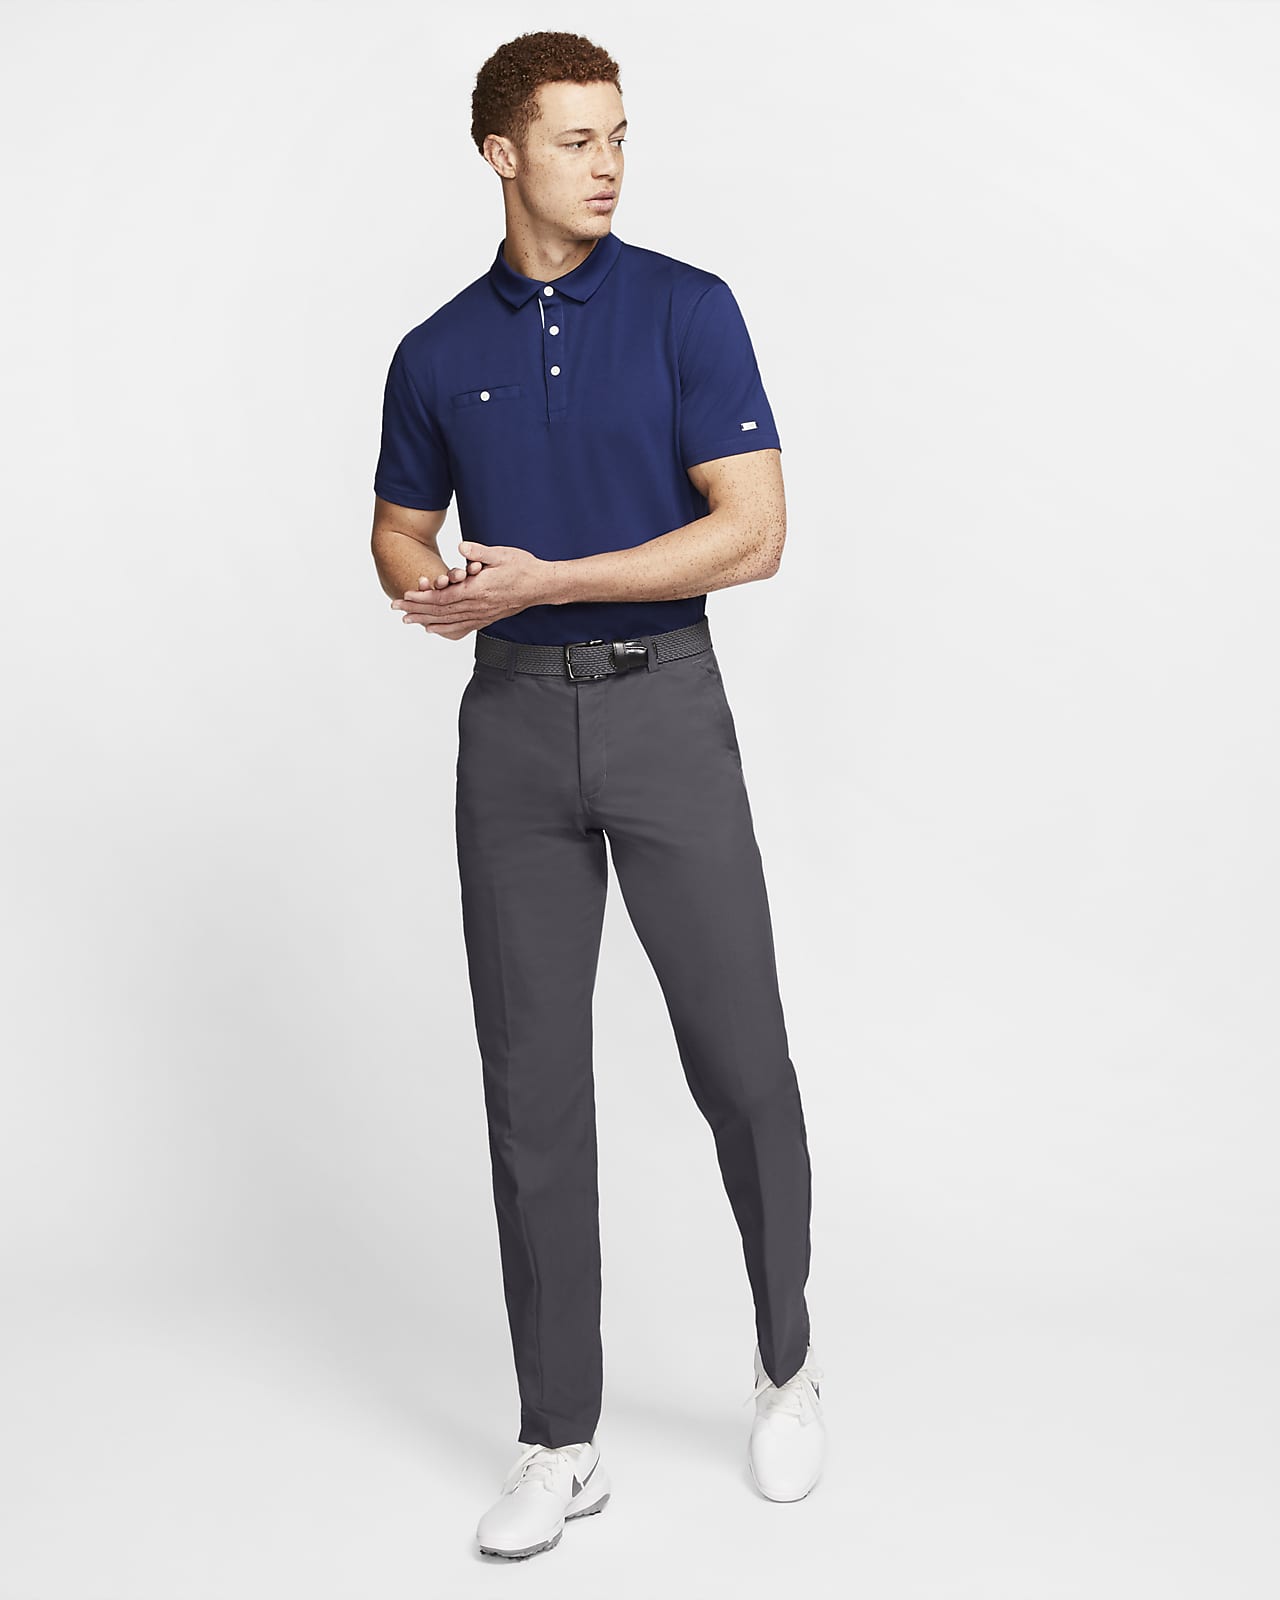 Pantalones de golf para hombre Nike.com